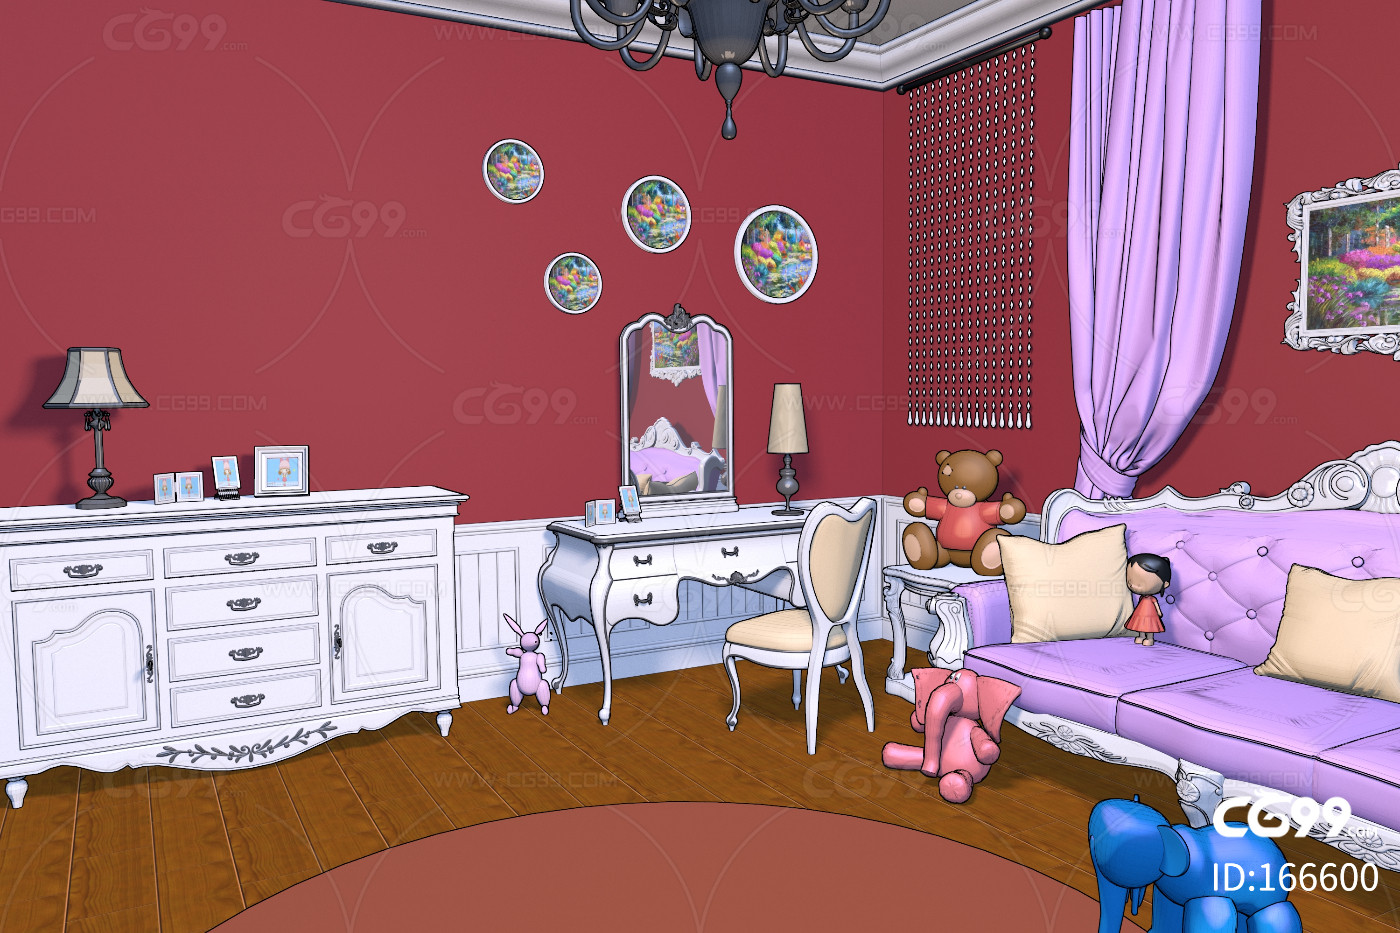 漫画卡通场景卧室儿童少女房间装饰油画梳妆台柜子欧式柜子沙发